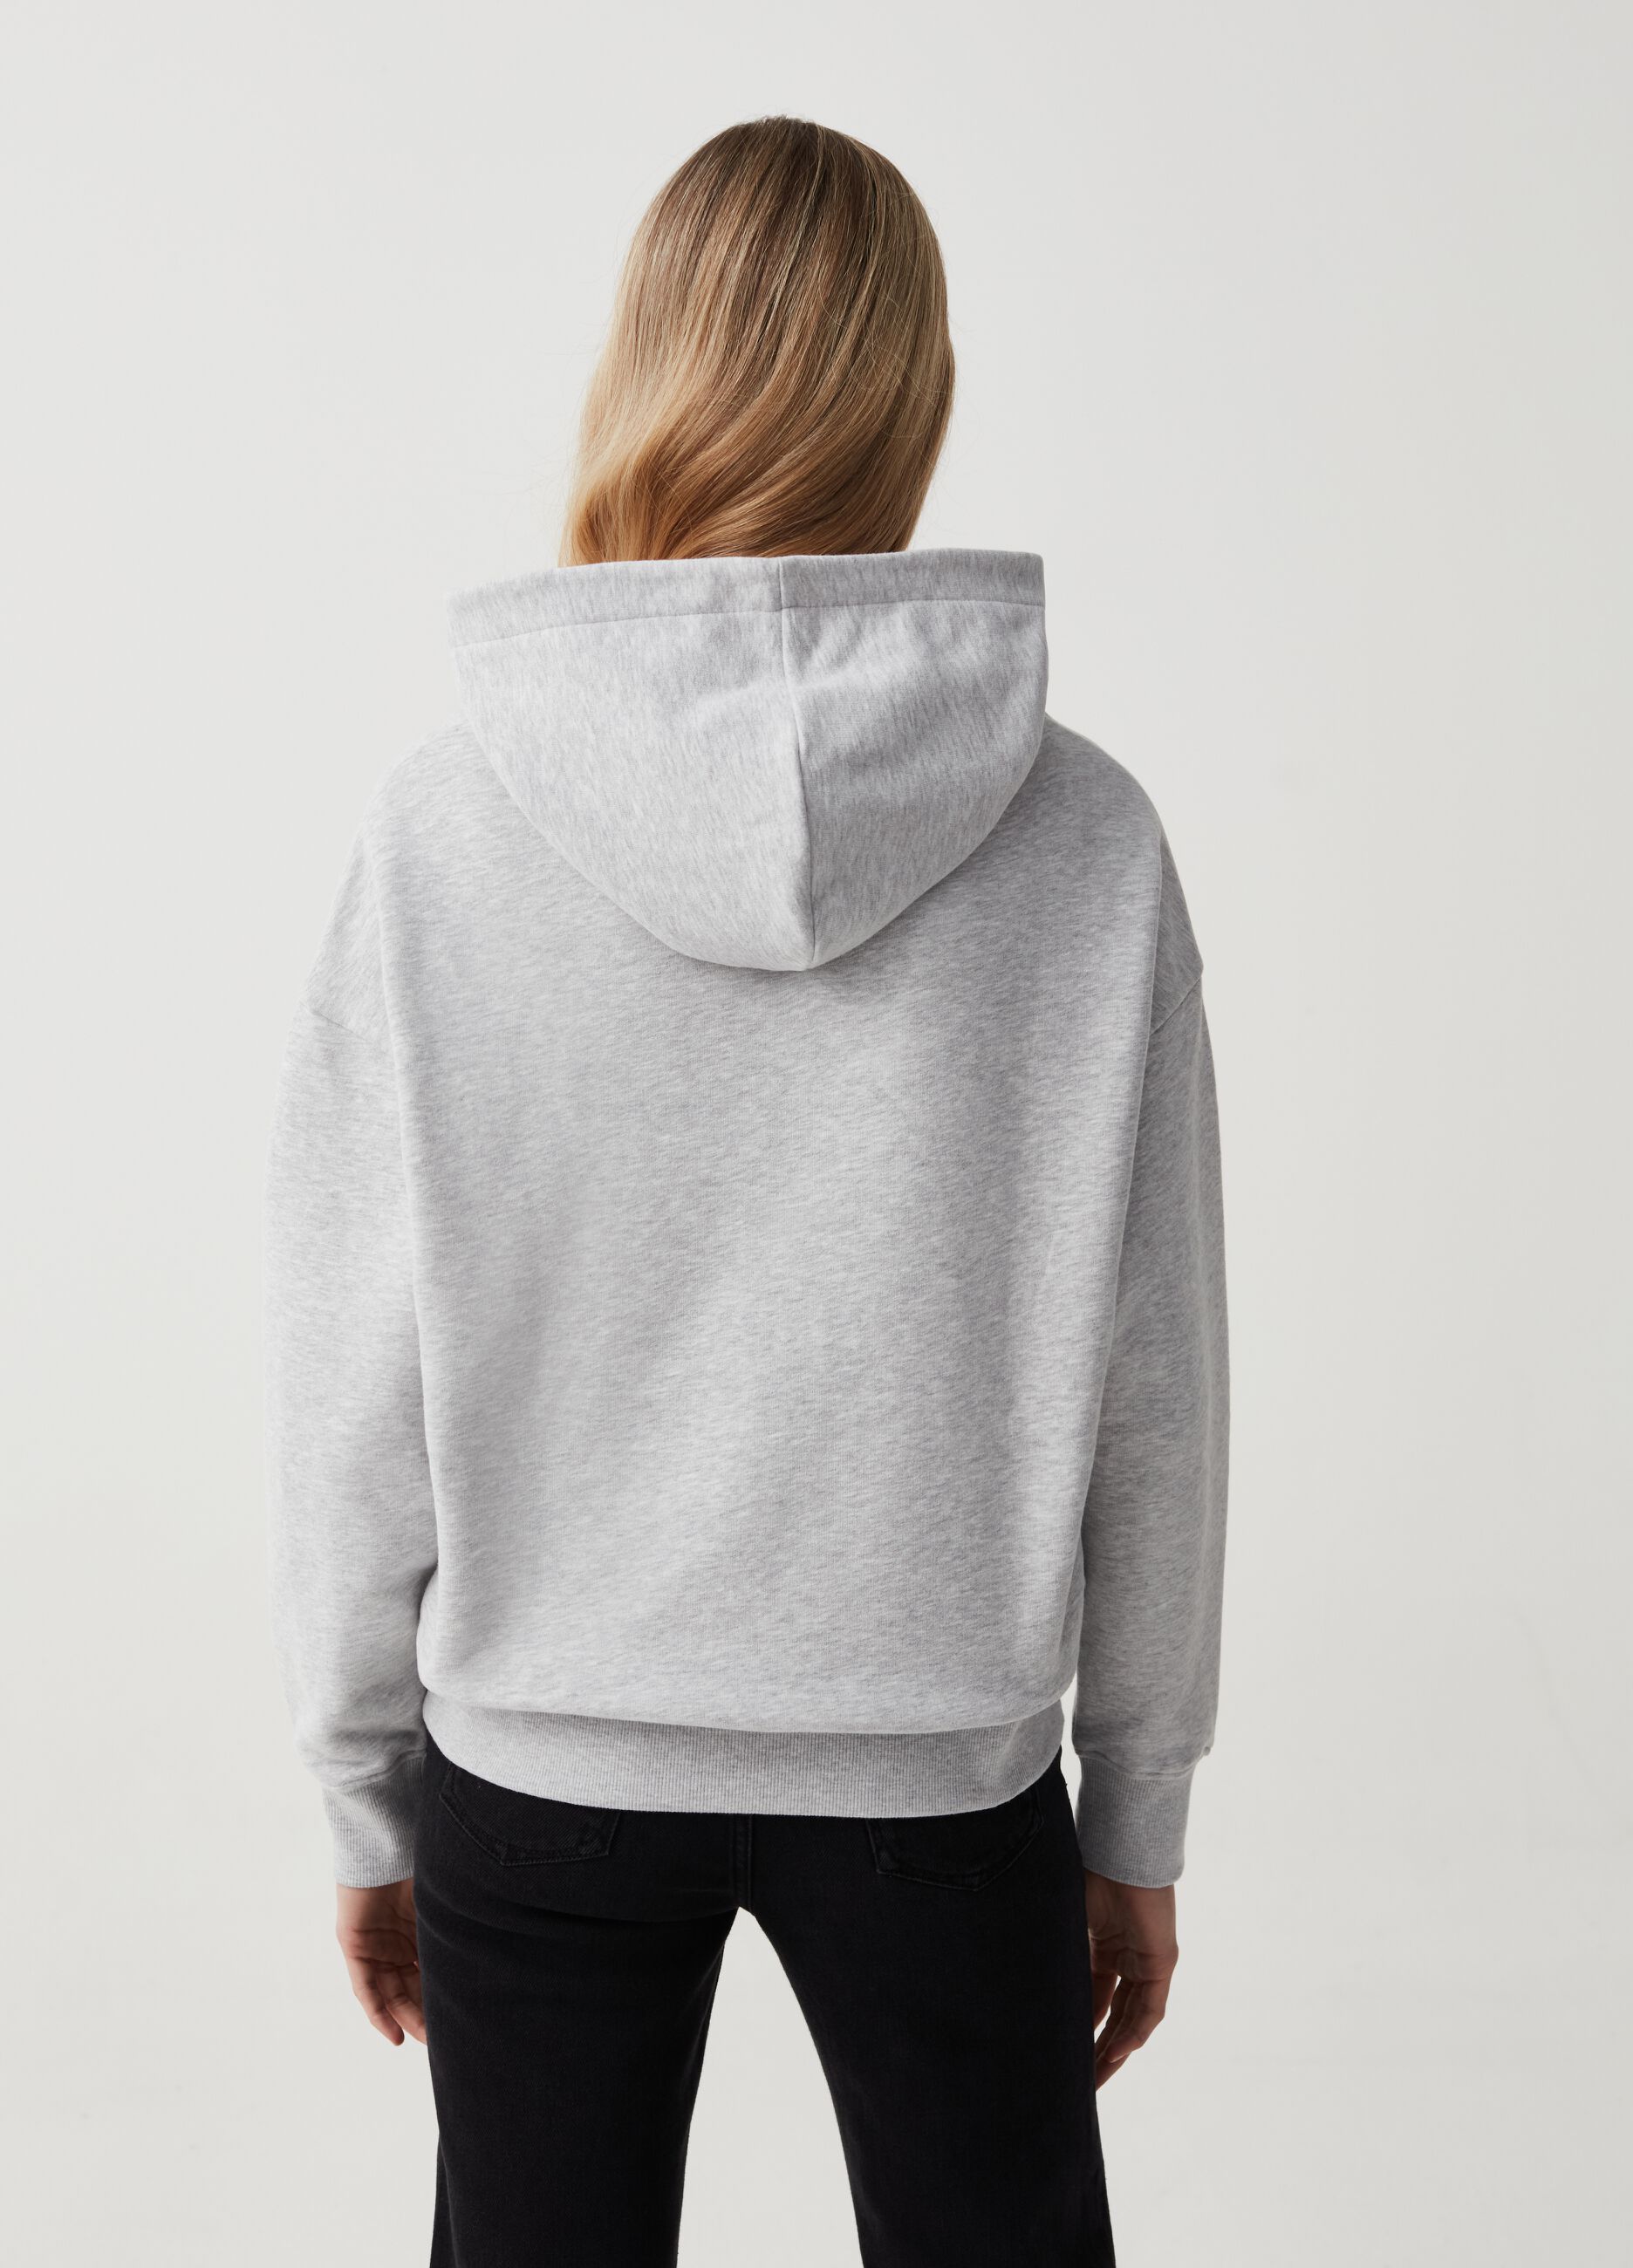 Sweatshirt with hood and print